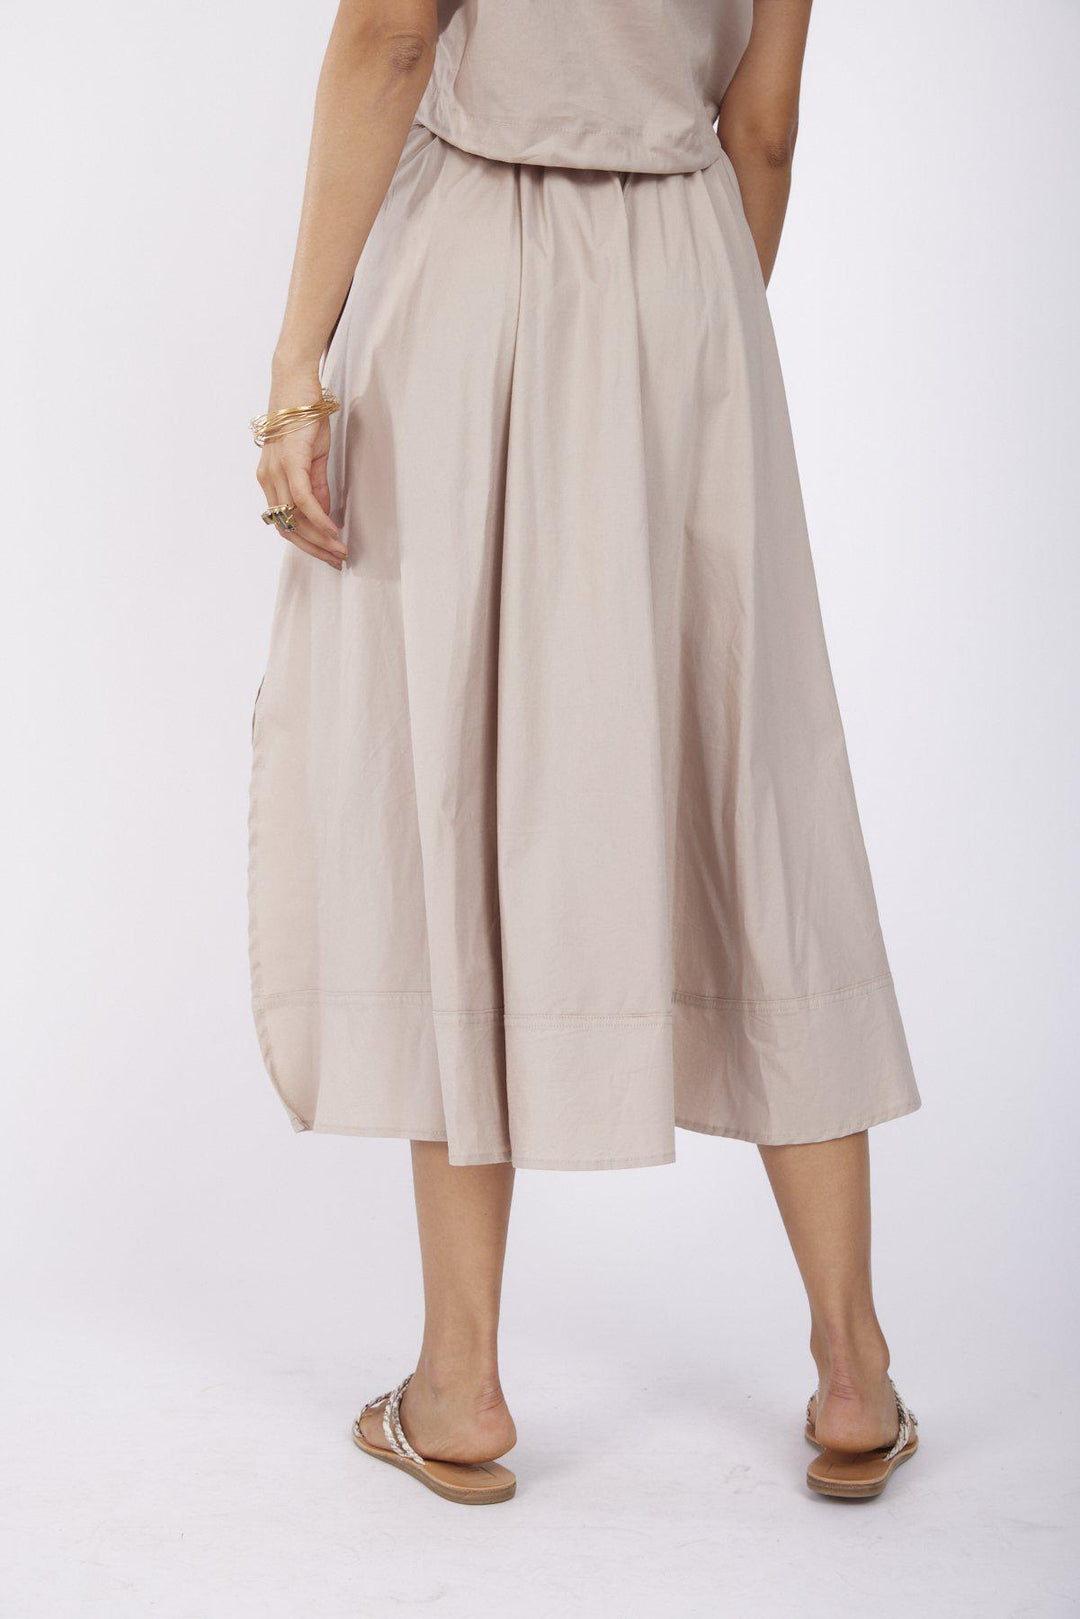 חצאית מידי בירד בצבע אבן - Razili Studio